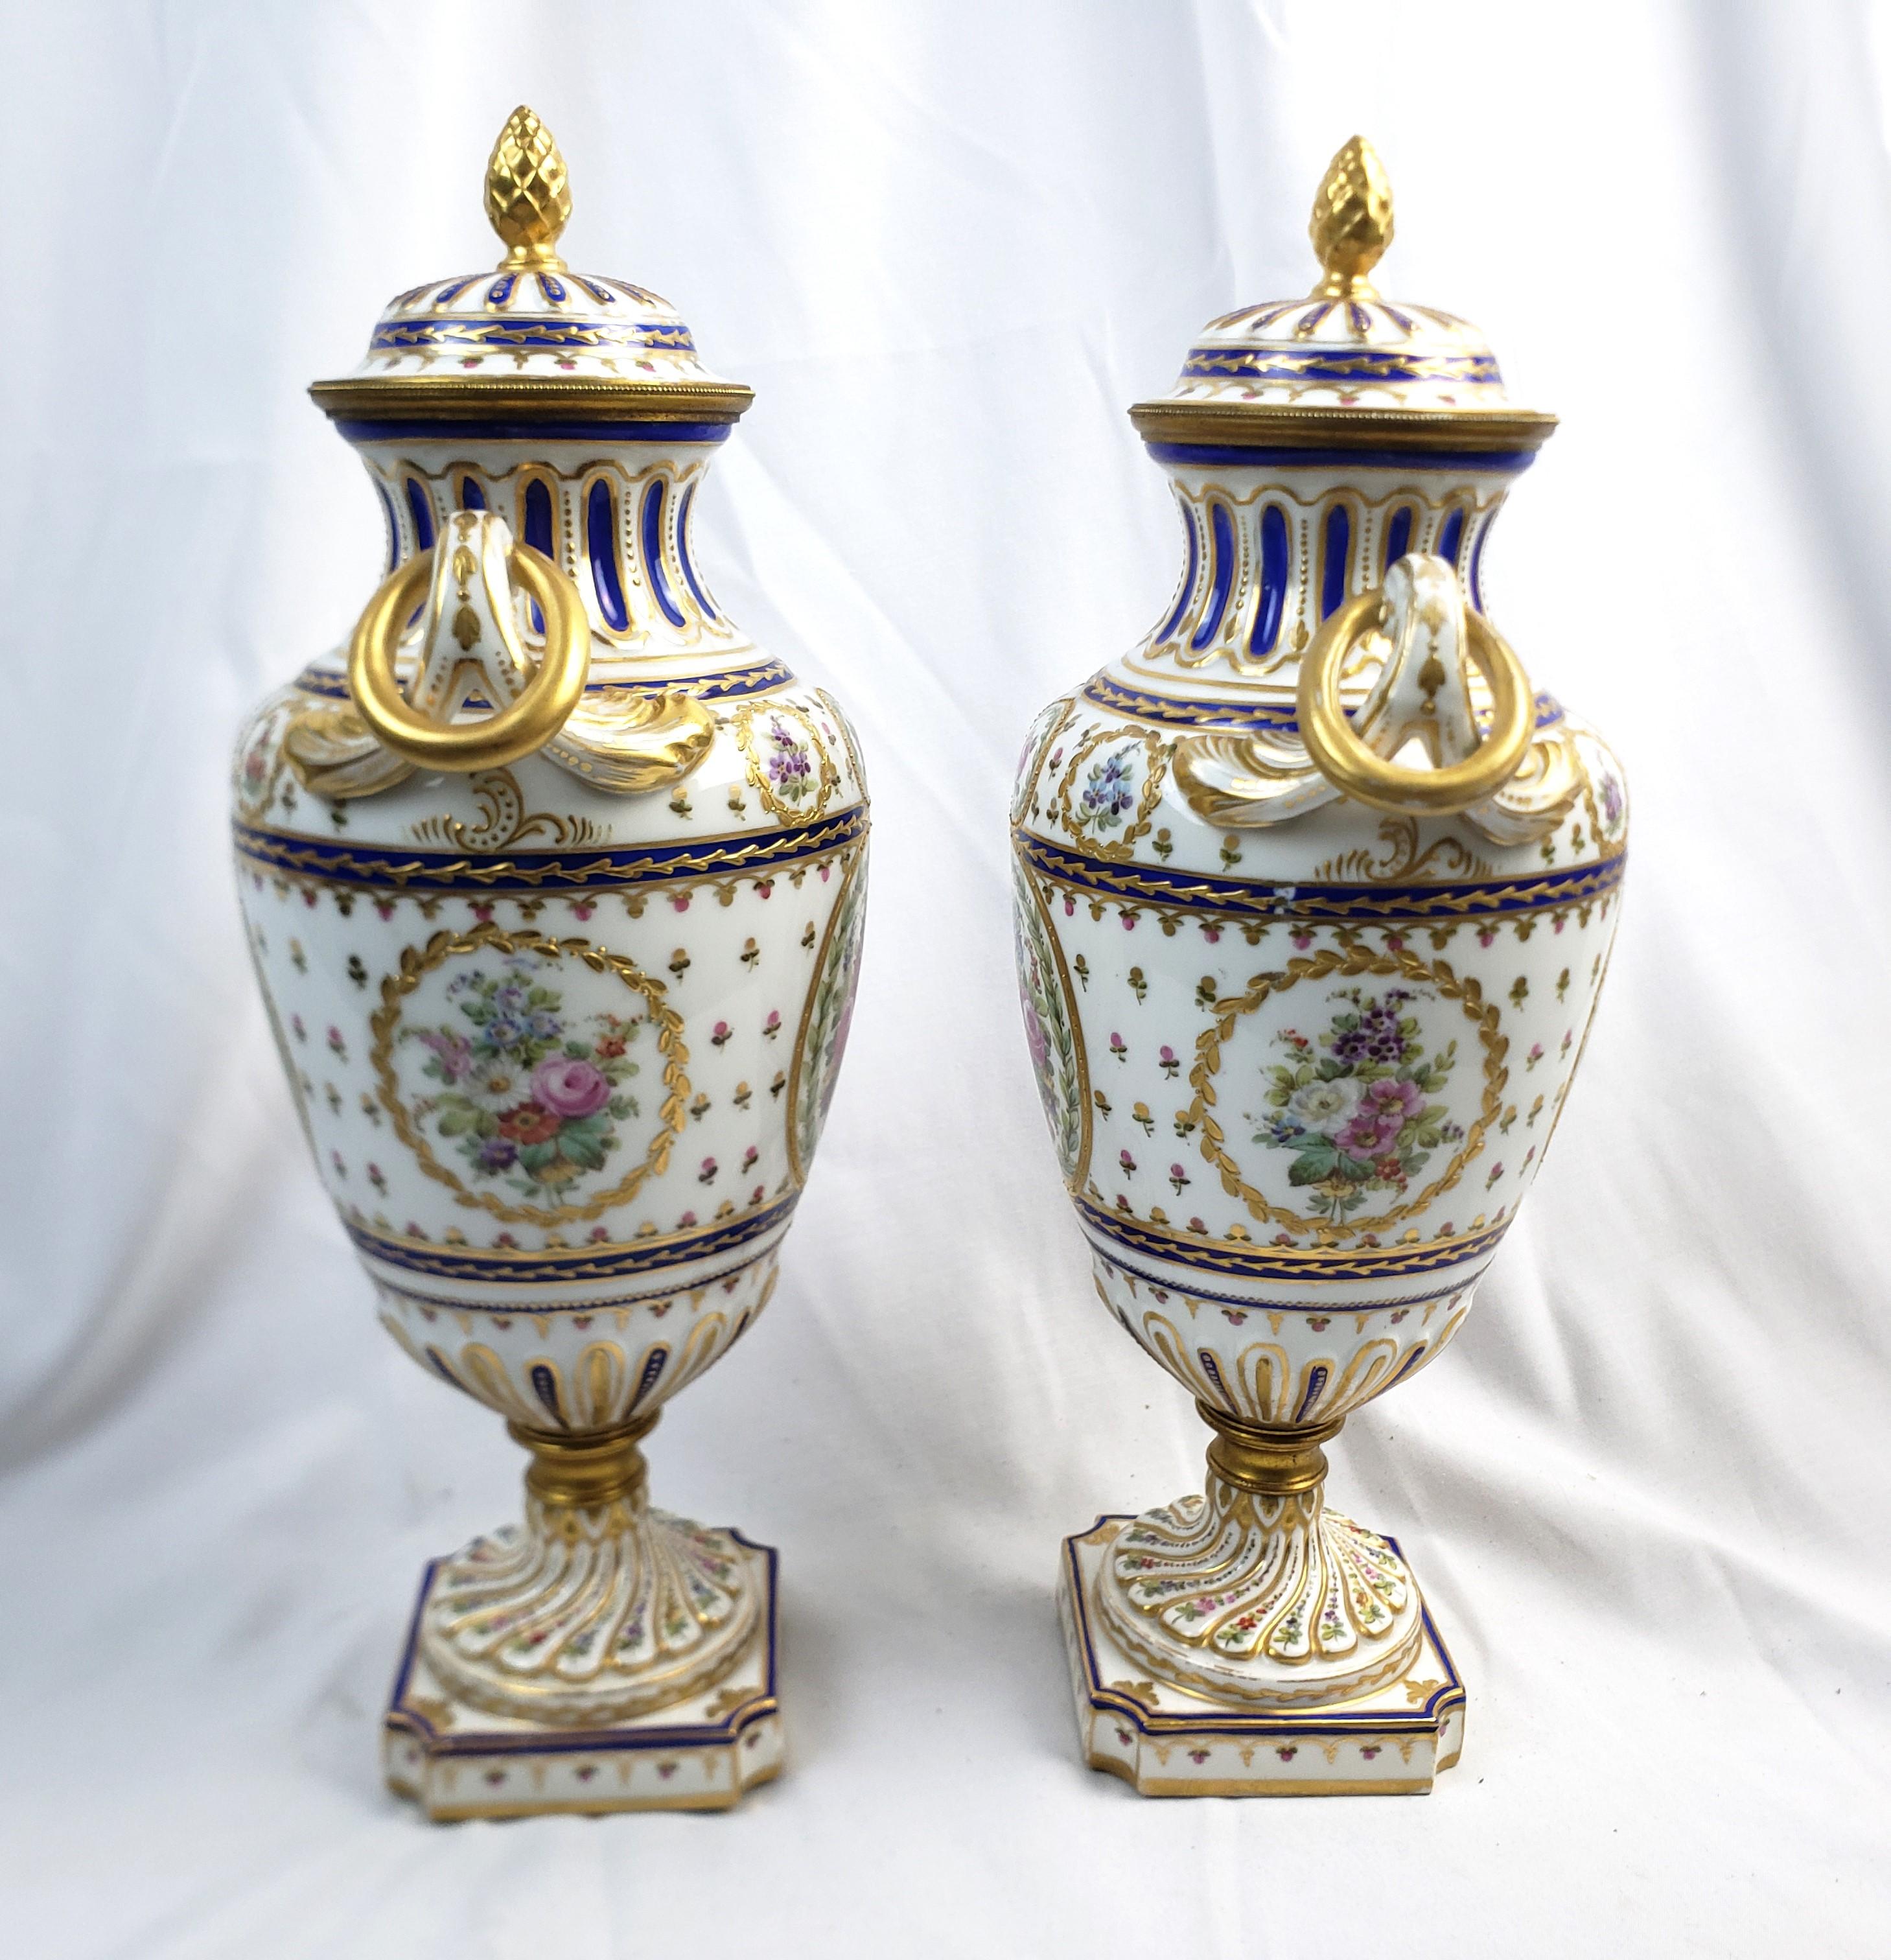 Vernissé Paire d'urnes couvertes antiques de style Sèvres avec décoration ornée peinte à la main en vente